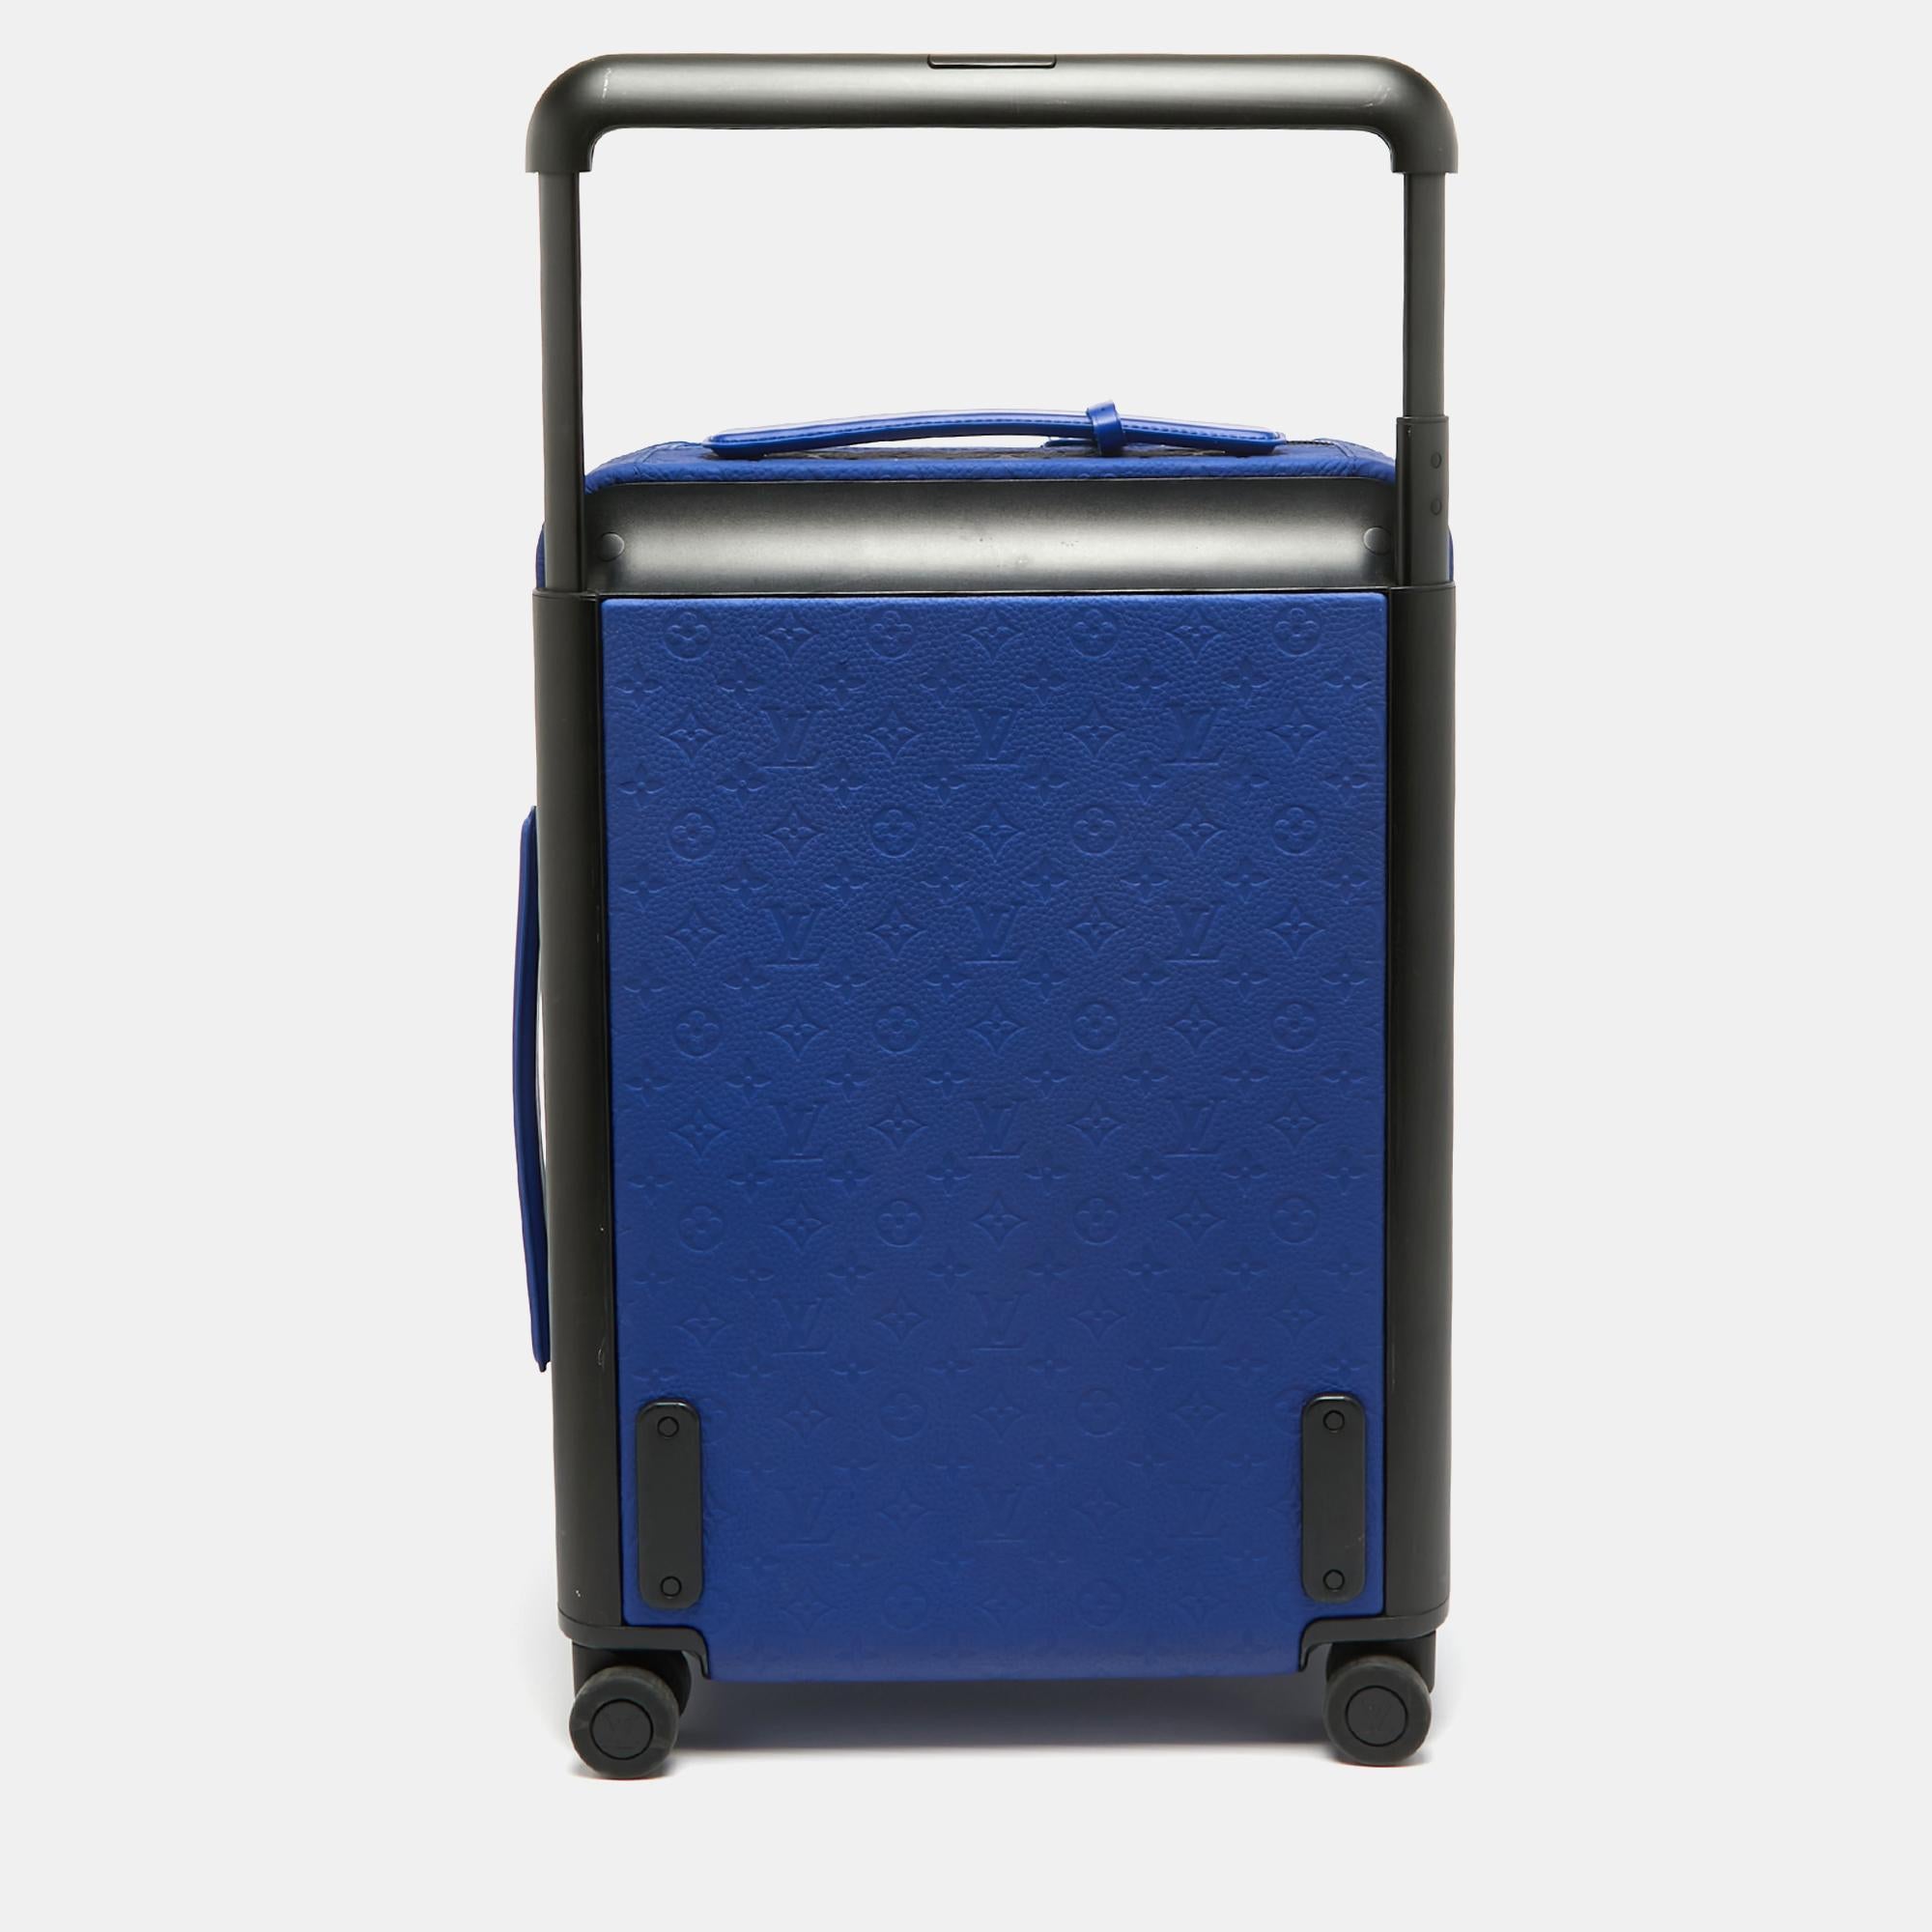 Llevando elegantemente hacia adelante el legendario arte de viajar de Louis Vuitton, esta maleta, fabricada con materiales de la firma, hace alarde de artesanía tradicional y de un diseño innovador y moderno. Ligero, robusto y ultramóvil, se desliza